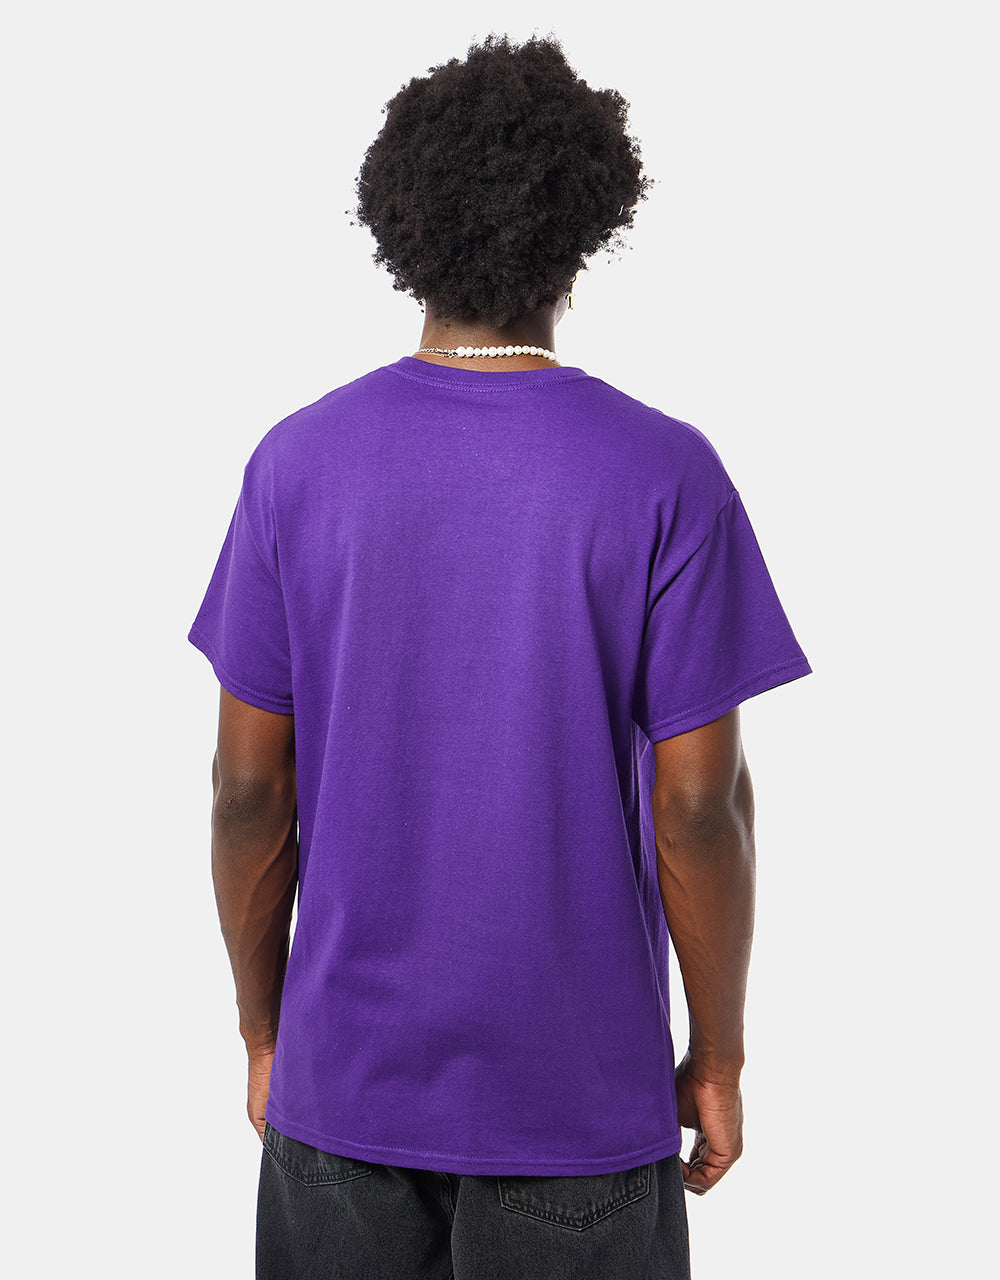 WKND Muscle T-Shirt - Purple